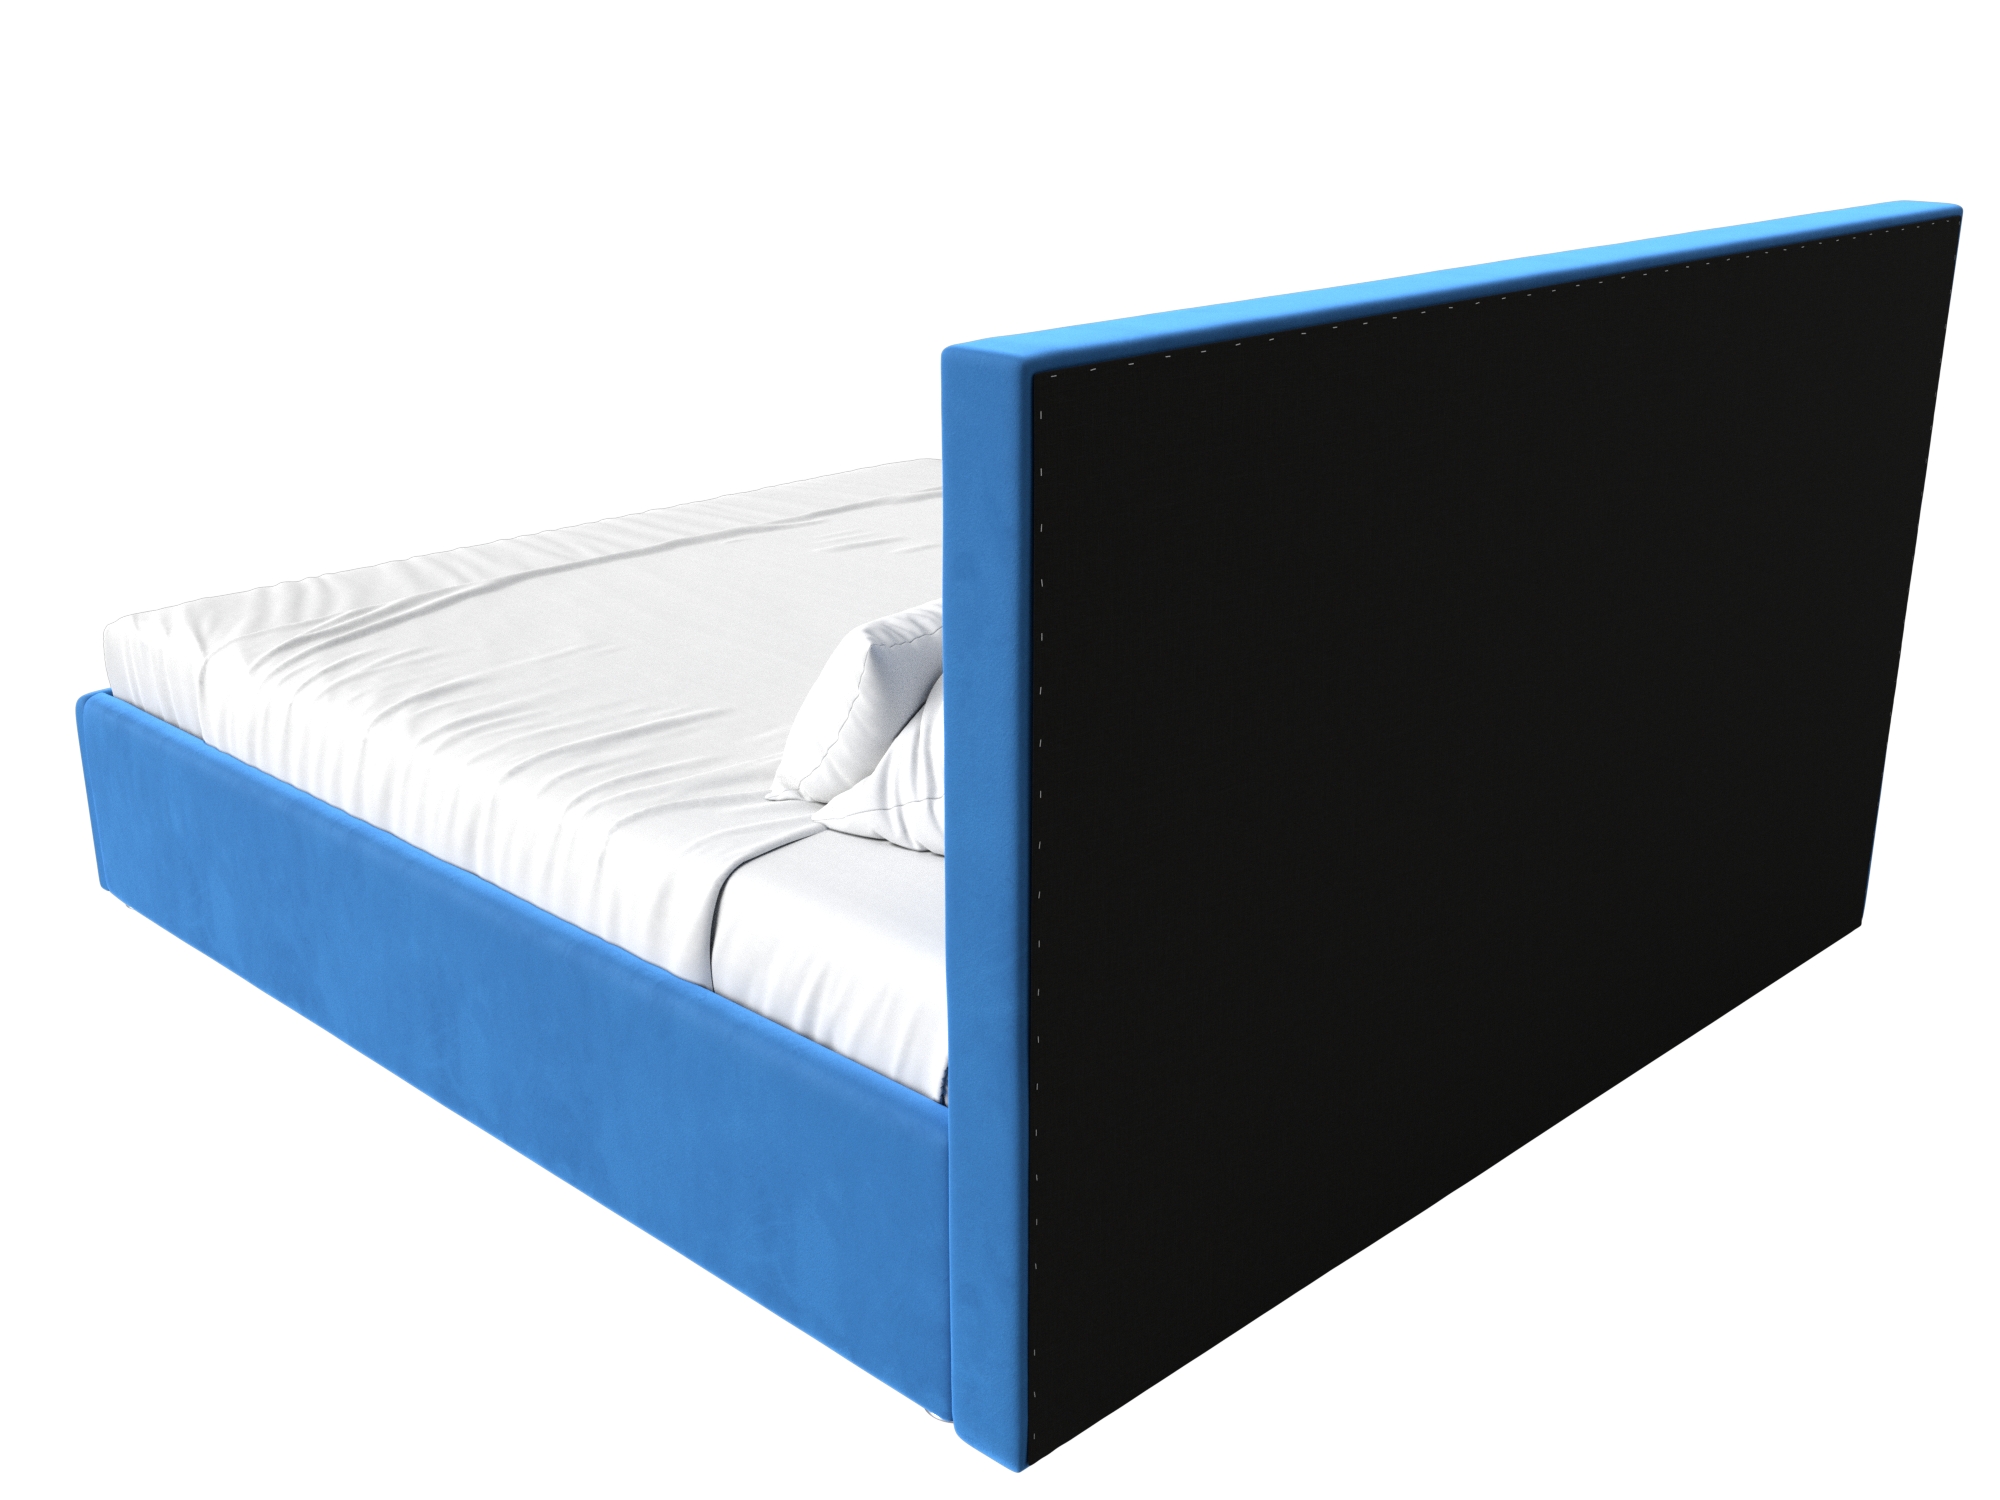 Интерьерная кровать Кариба 160 (Голубой)